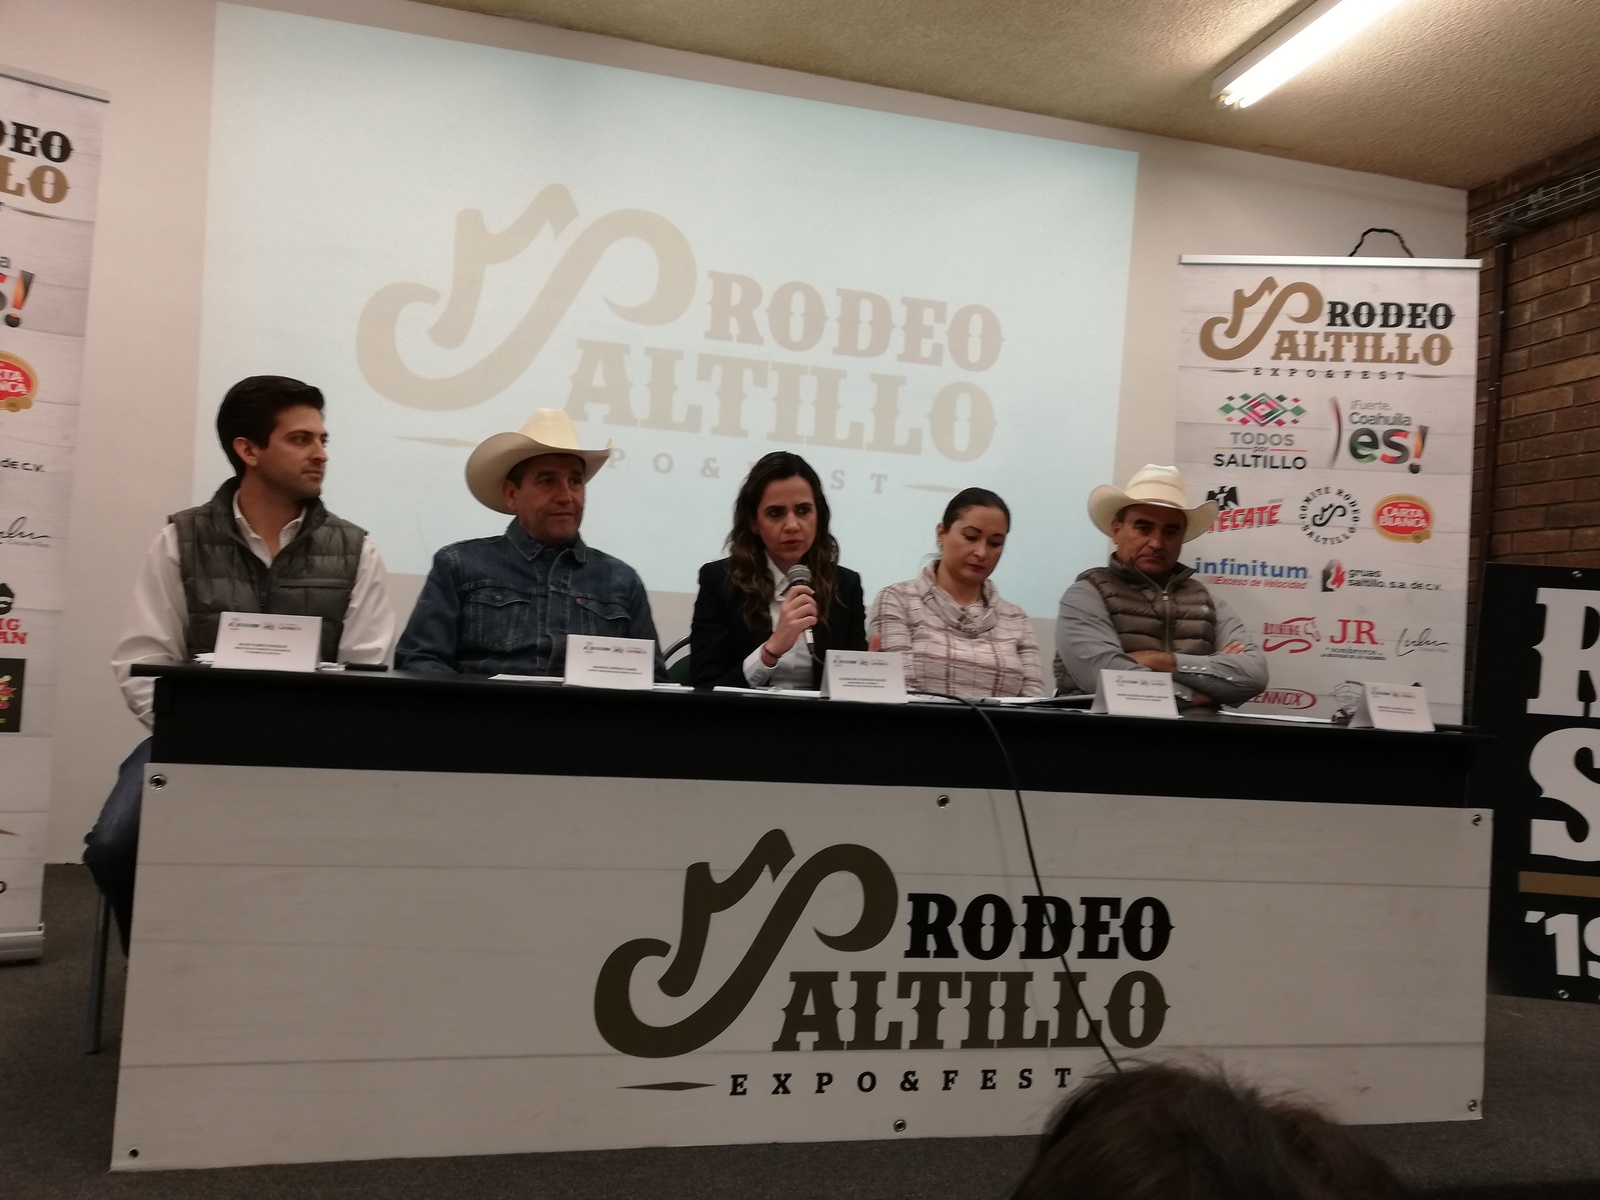 Ahora la instrucción es aprovechar cada vez más el lanzamiento de festivales para potencializar el evento que se realice en el estado, como es el caso de la Expo Fest Rodeo Saltillo. (EL SIGLO DE TORREÓN/VIRGINIA HERNÁNDEZ)